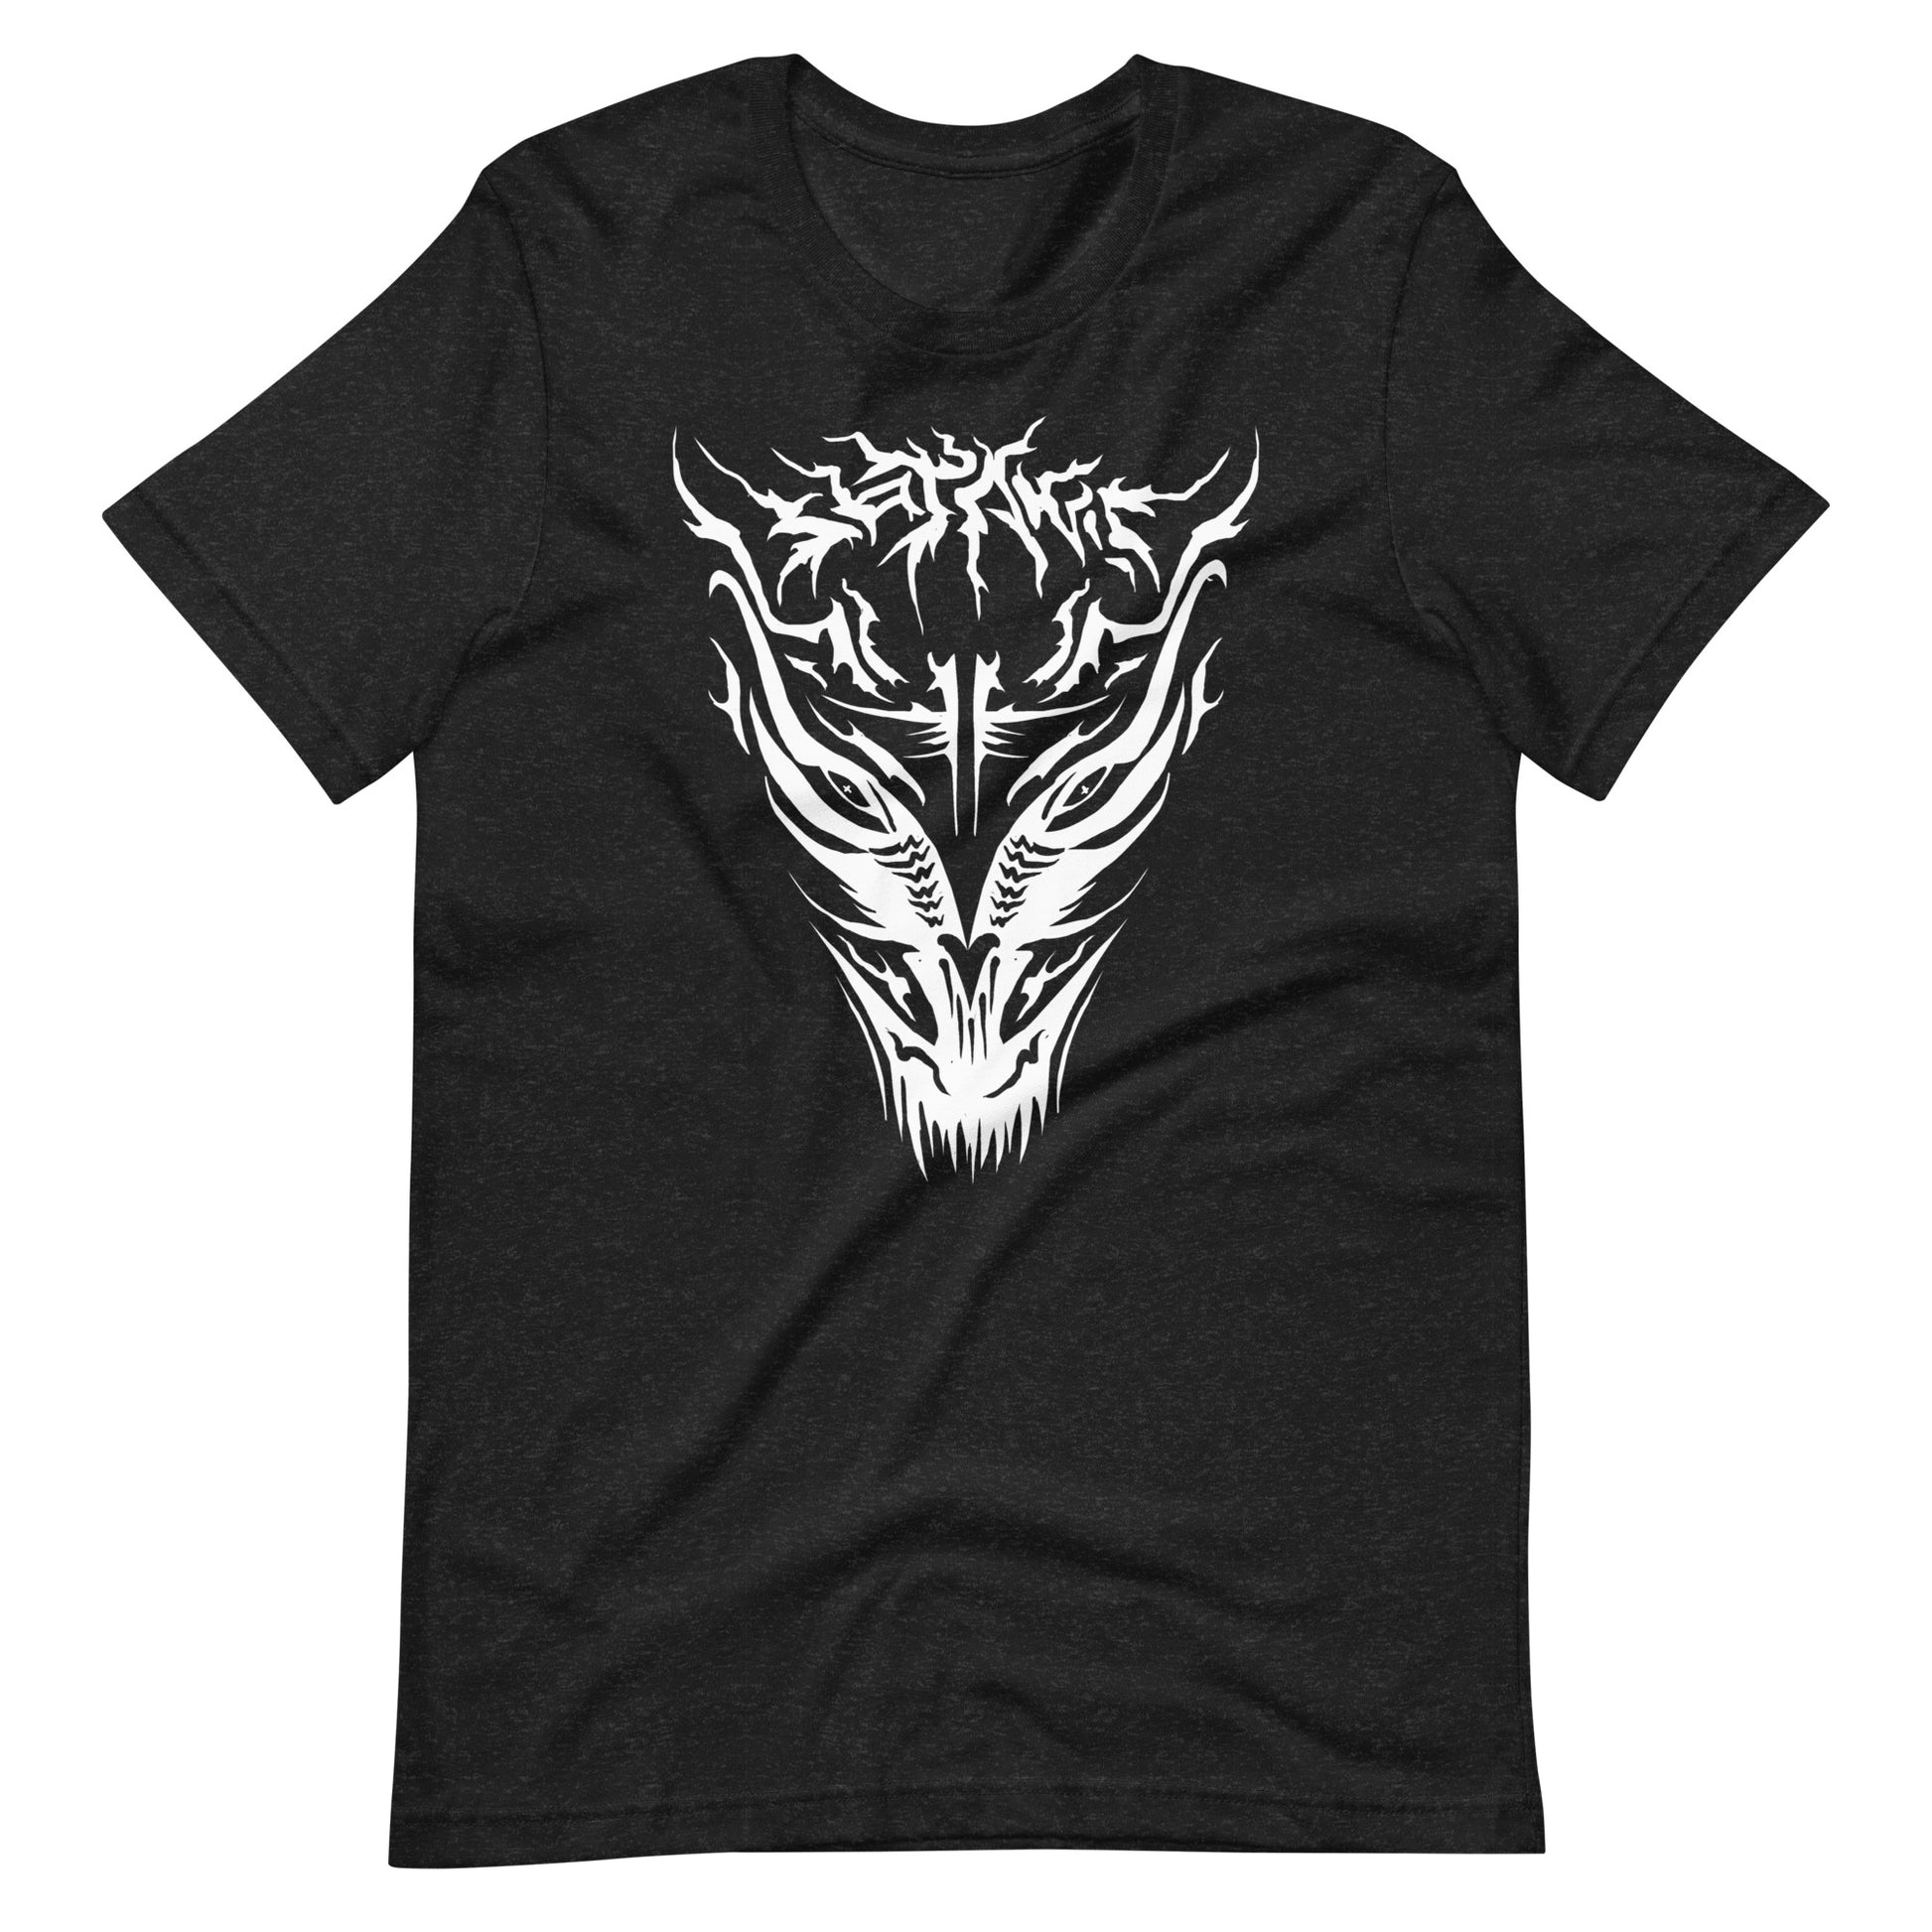 Demon - Men's t-shirt - Black Heather Front